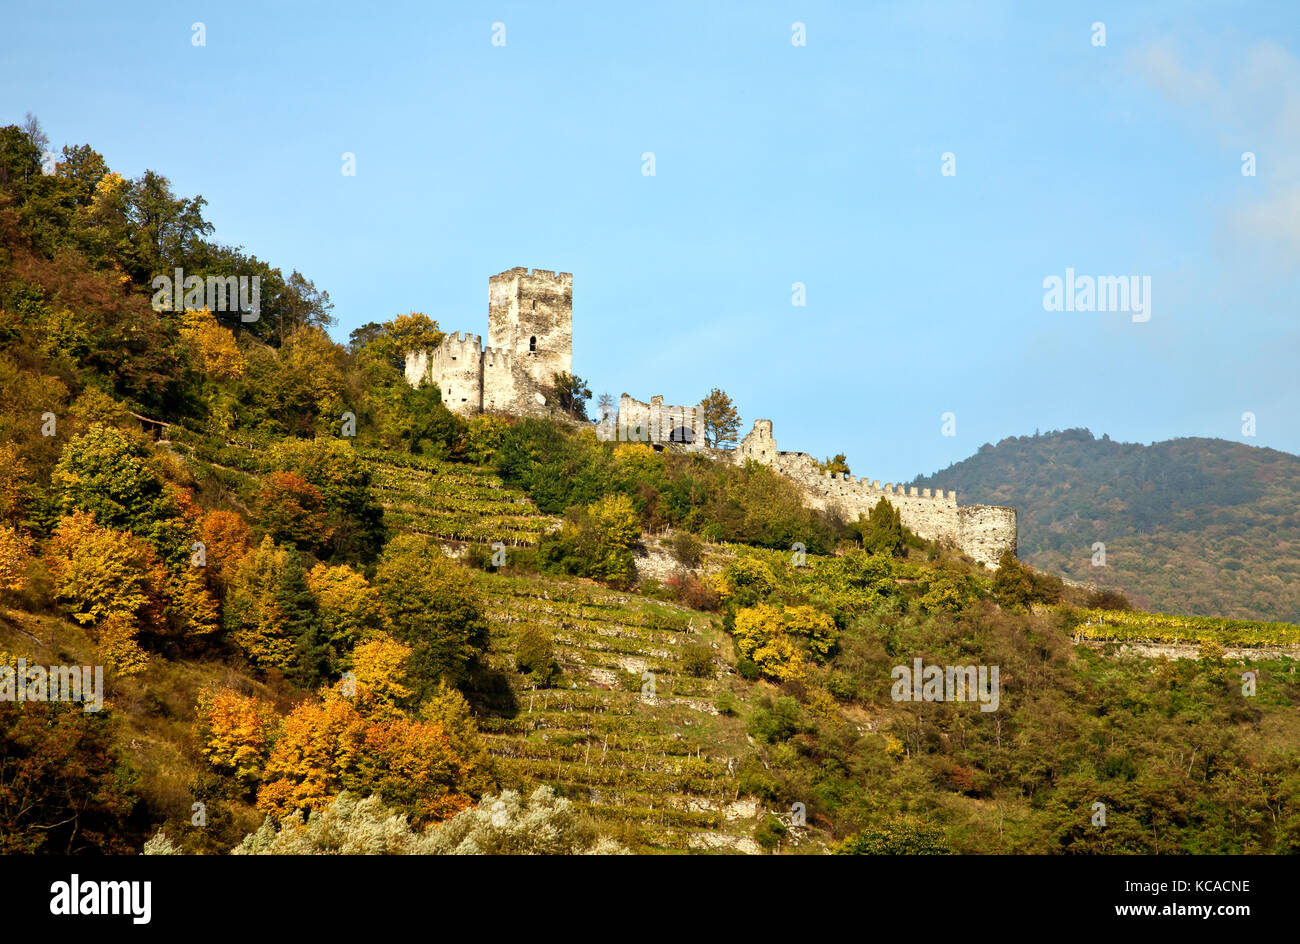 Valle de Wachau, Austria: una ruina medieval, la fortaleza de Hinterhaus, domina la ciudad de Spitz en el río Danubio entre Melk y Durnstein. Thi Foto de stock